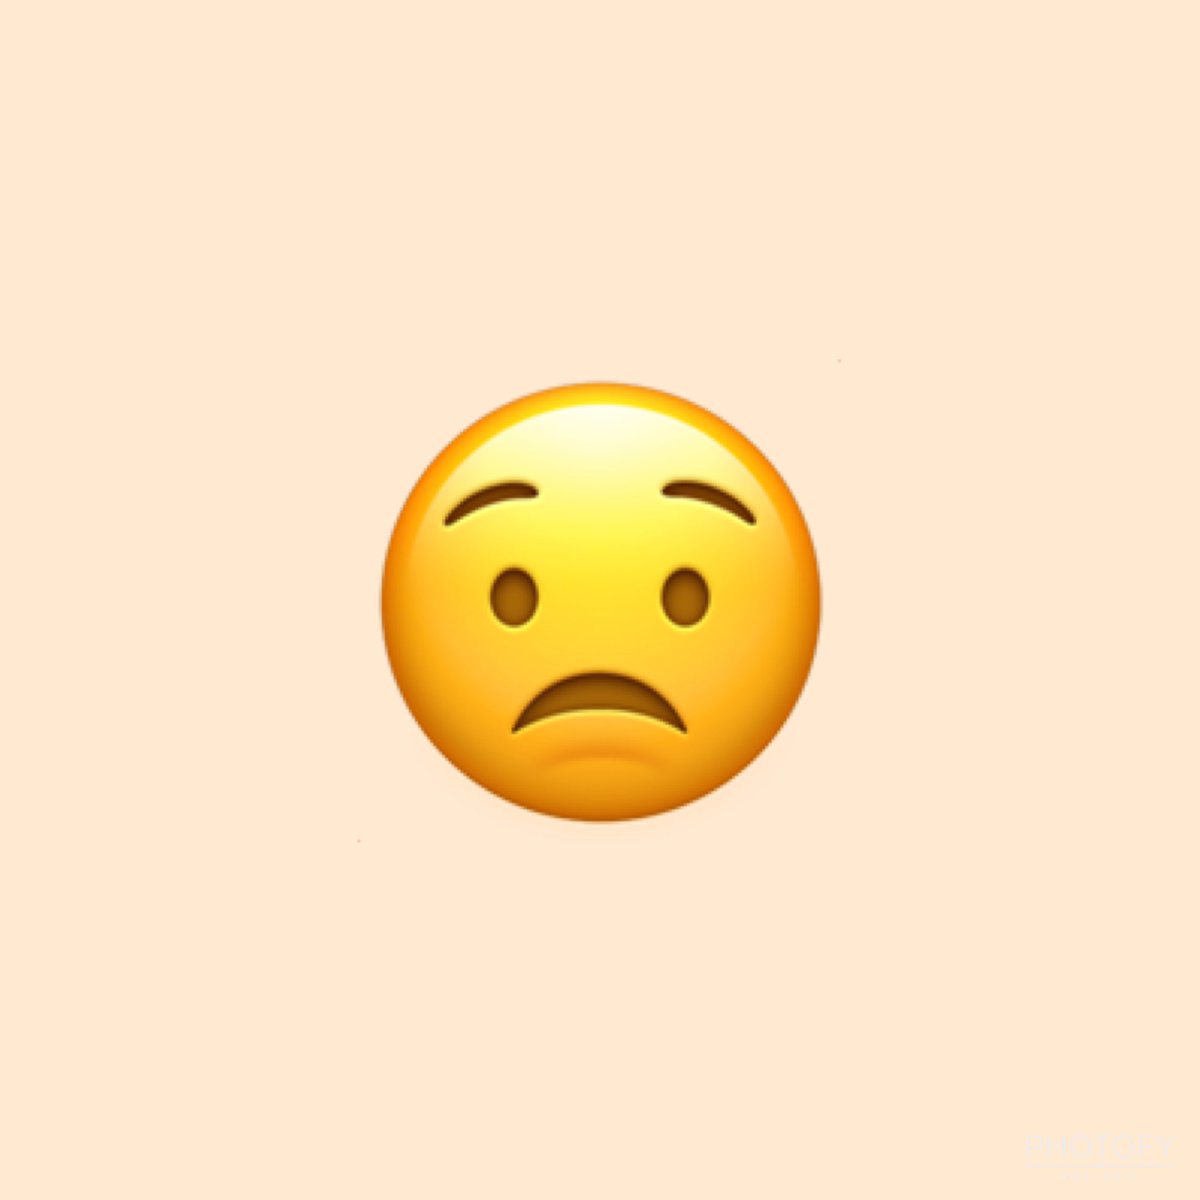  @BOGUMMY as emojis: a thread  #ParkBoGum